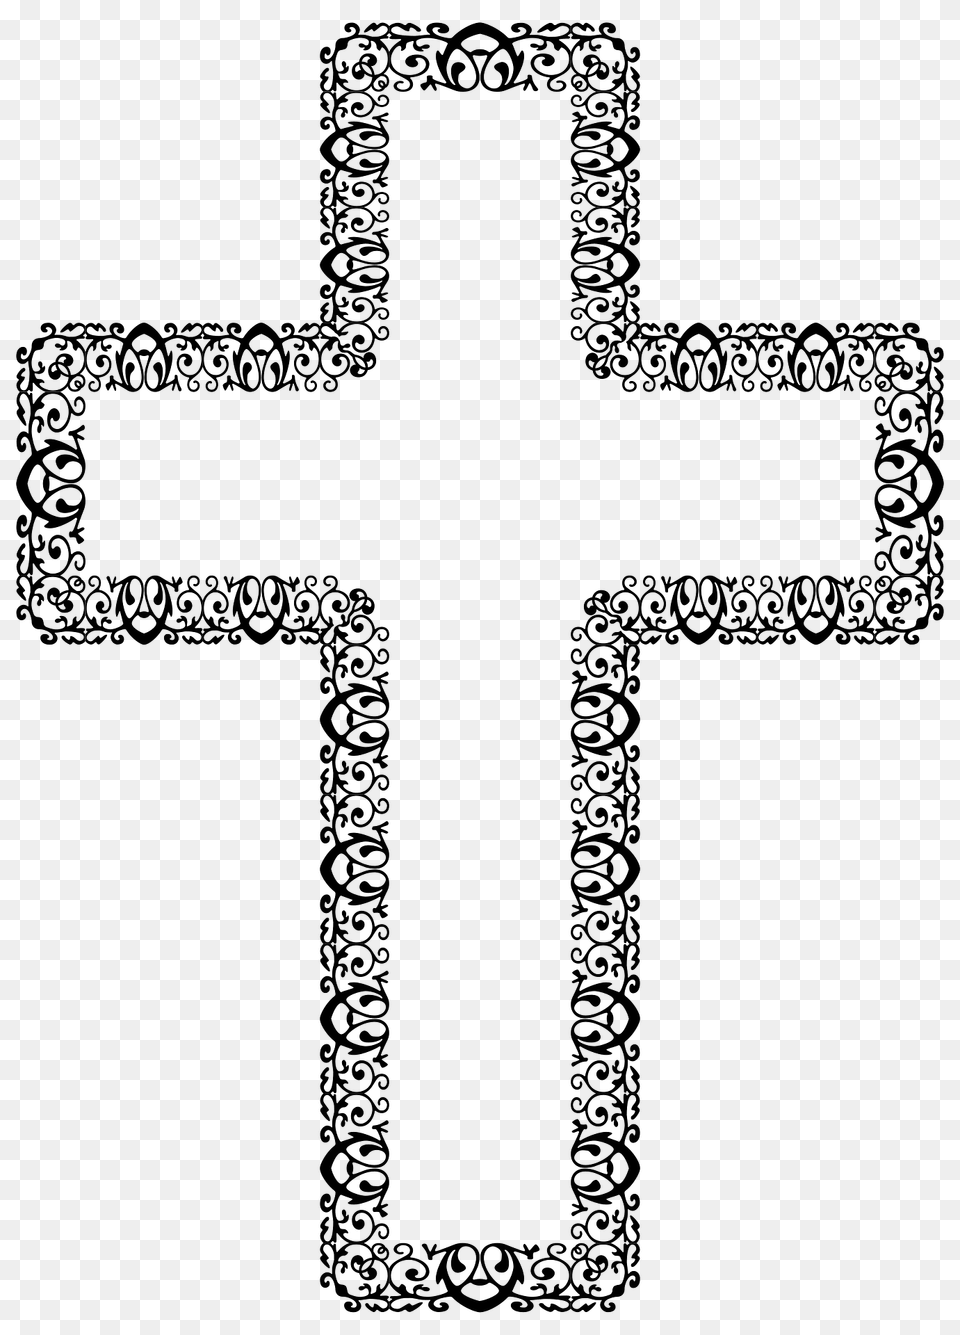 Decorative Ornamental Cross Clipart, Symbol Png